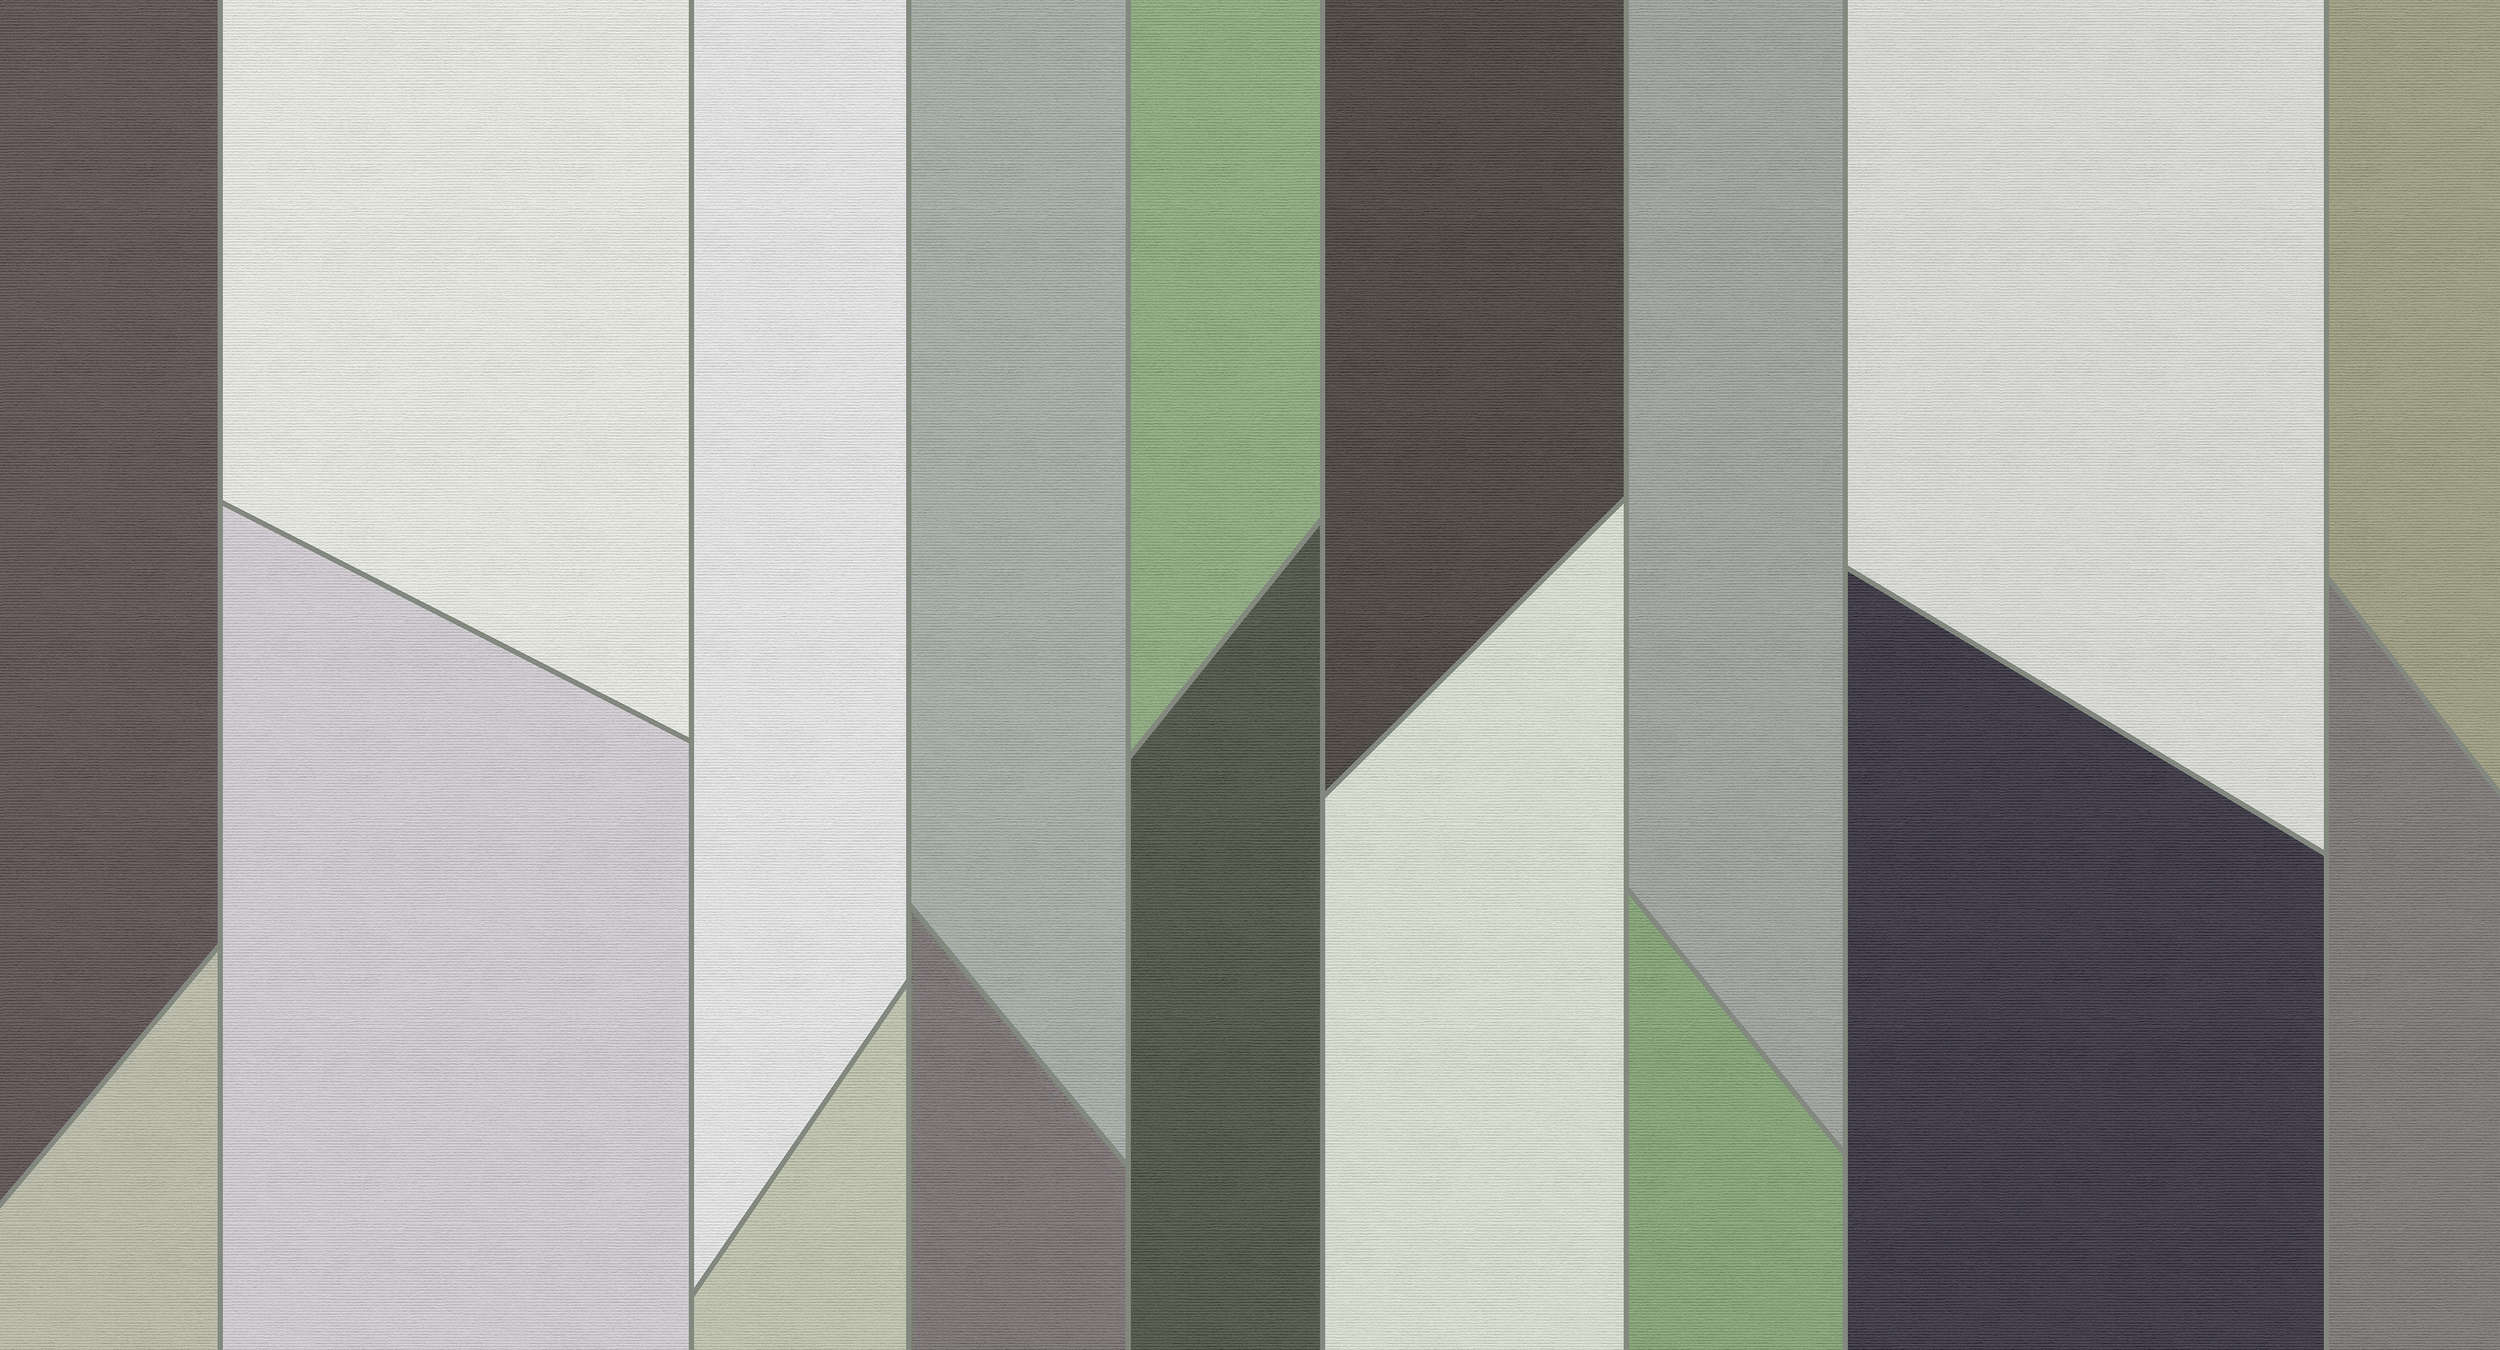             Geometry 3 - Gestreept behang in ribbelstructuur met kleurrijk retrodessin - Groen, Paars | Pearl glad vlies
        